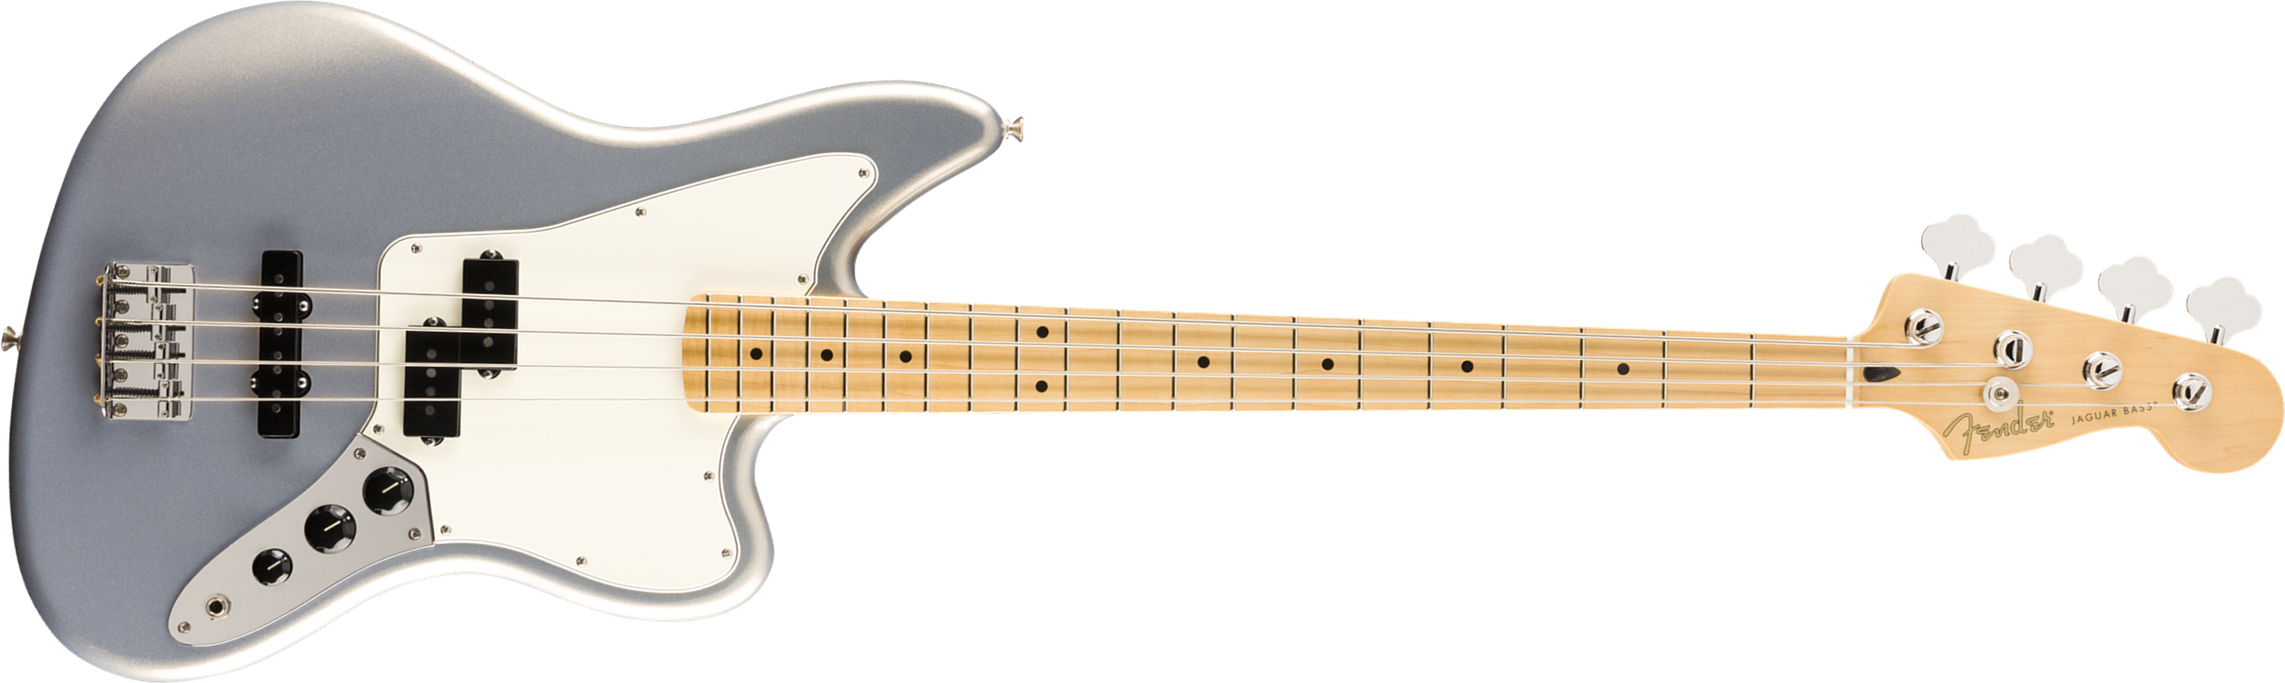 Fender Jaguar Bass Player Mex Mn - Silver - Basse Électrique Solid Body - Main picture